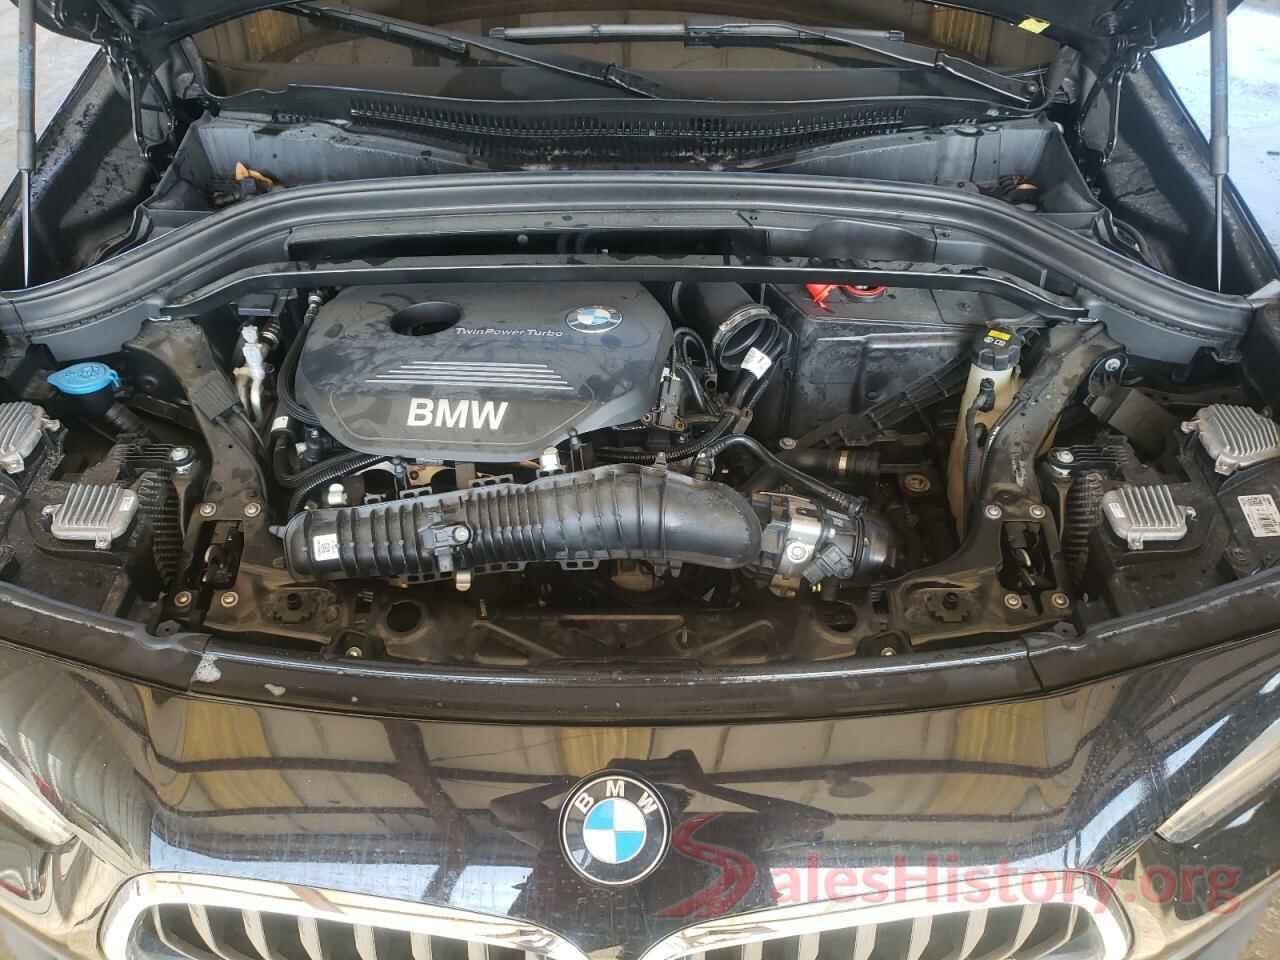 WBXYJ3C32JEJ91189 2018 BMW X2